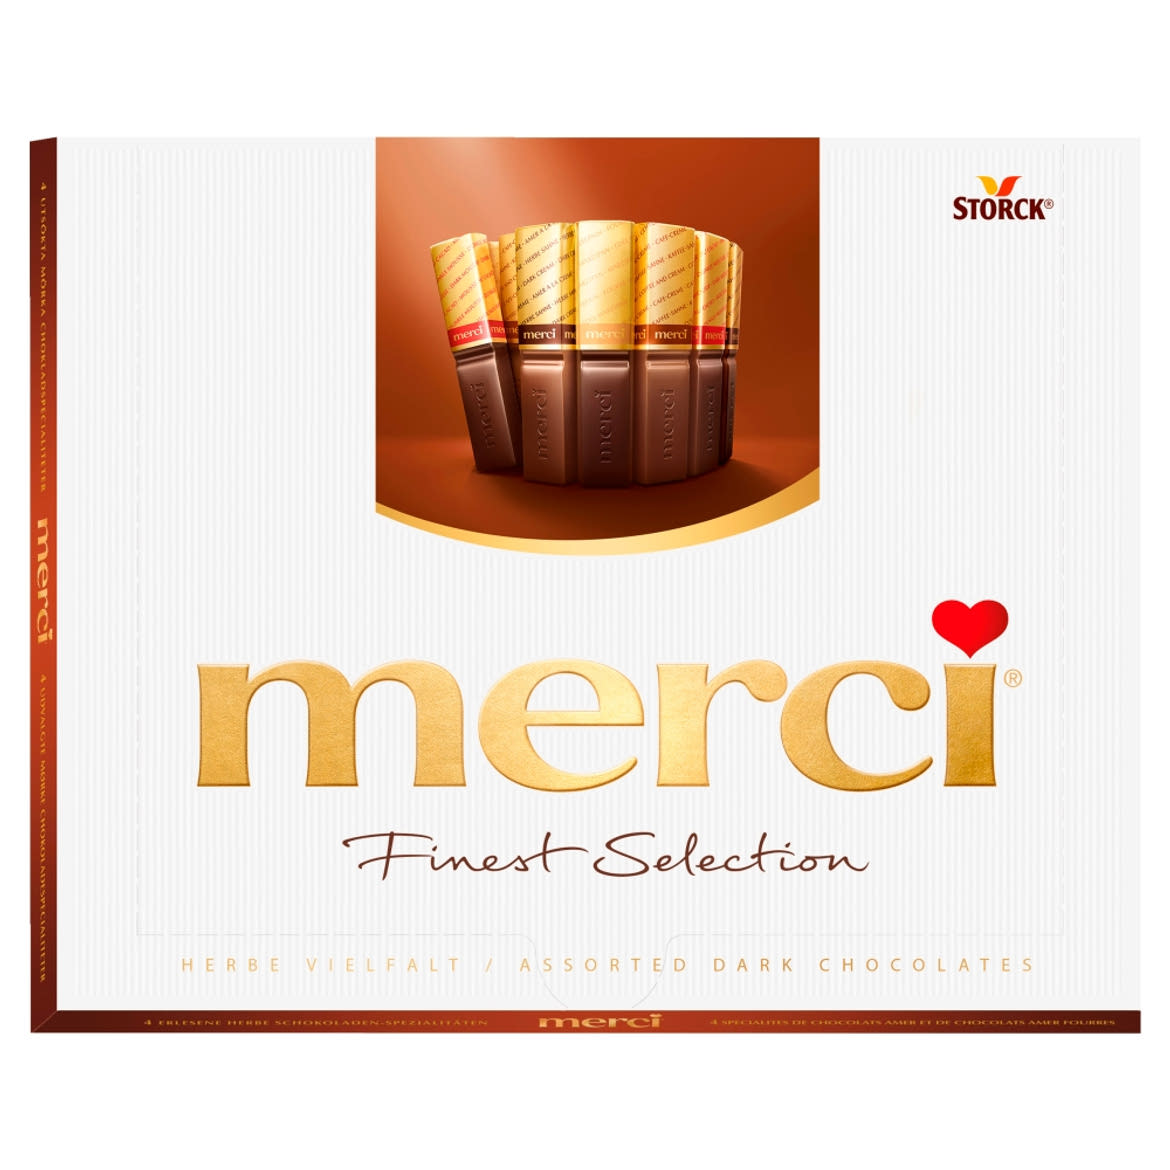 Merci Finest Selection 4 étcsokoládé-különlegesség